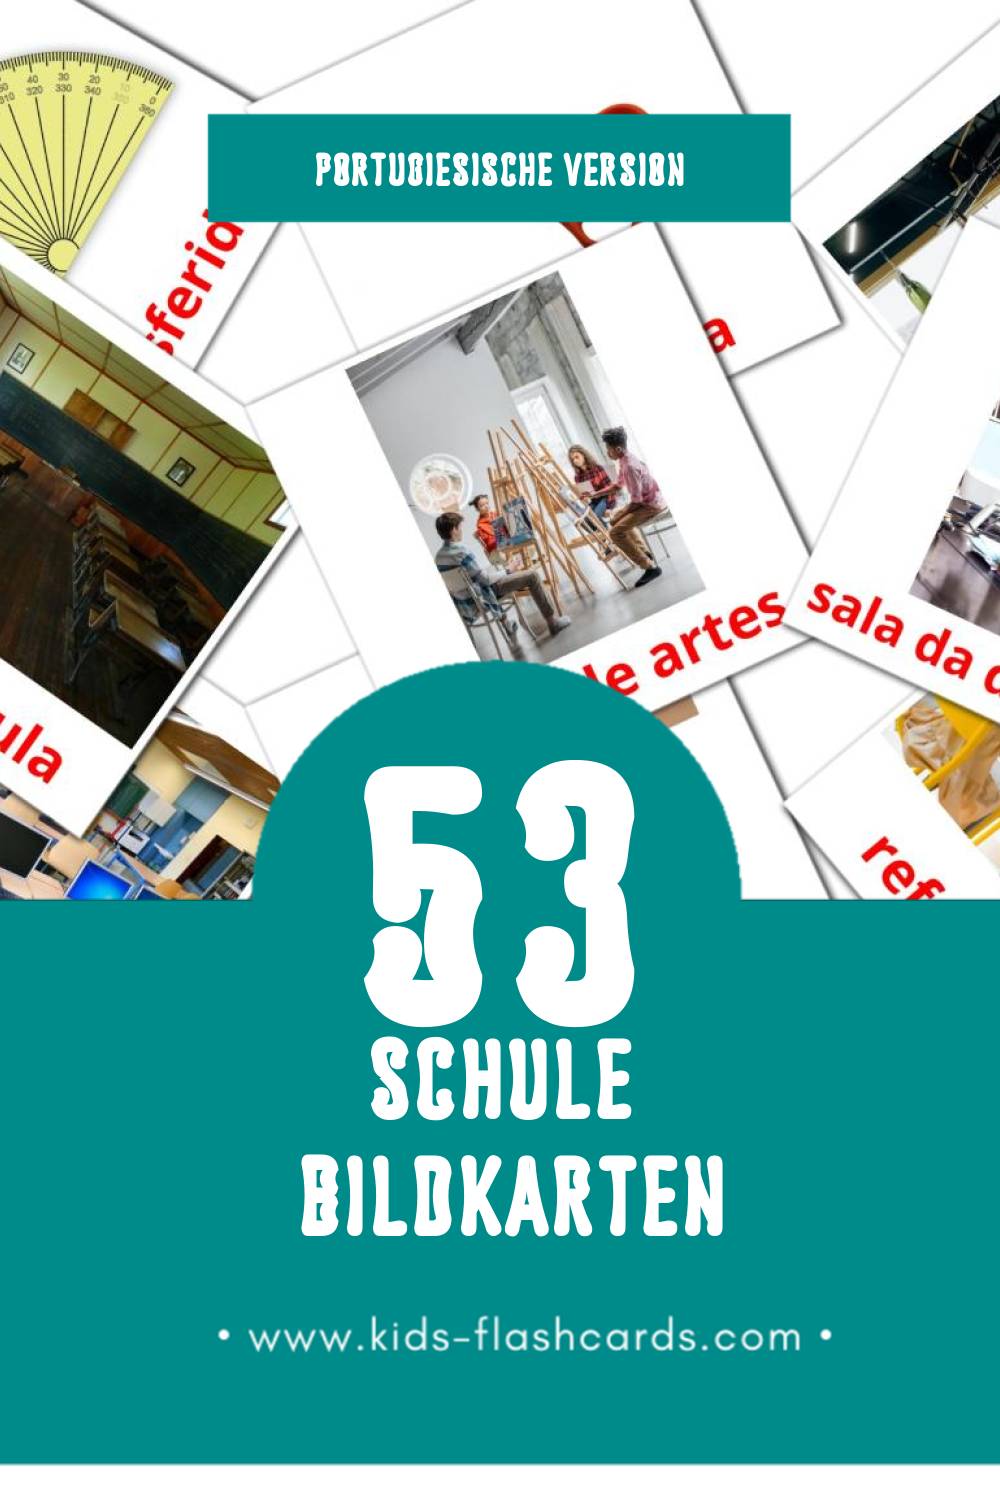 Visual Escola Flashcards für Kleinkinder (53 Karten in Portugiesisch)